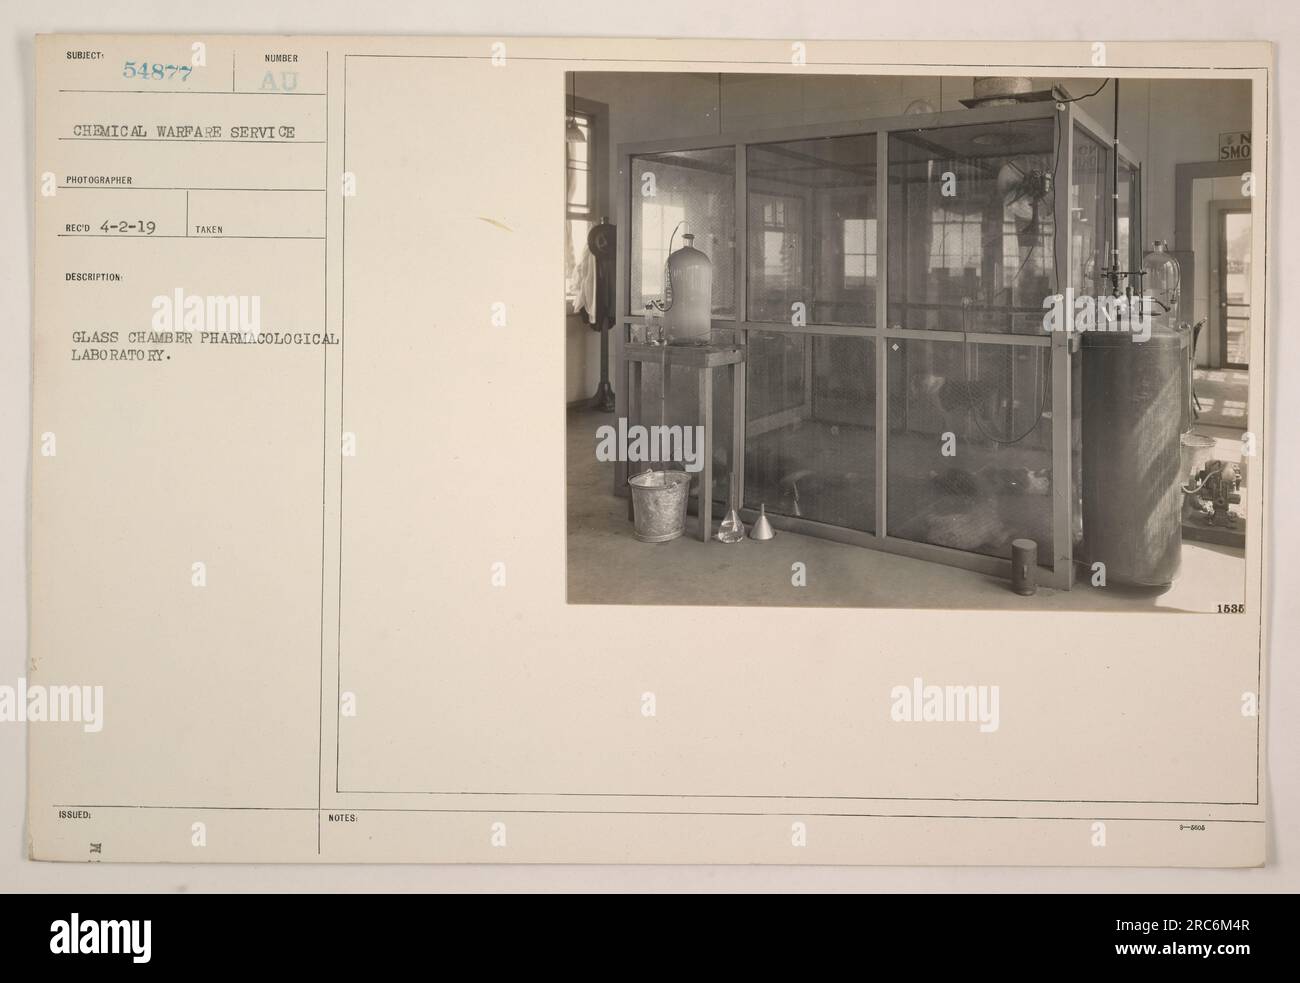 Glaskammer in einem pharmakologischen Labor des Chemischen Kriegsdienstes. Das Foto wurde von Fotograf 54877 am 2. April 1919 aufgenommen. Aus der vorgelegten Beschreibung geht hervor, dass die Glaskammer in einem pharmakologischen Labor verwendet wird. Die ausgestellte Nummer für dieses Bild ist SMO 1638. Stockfoto